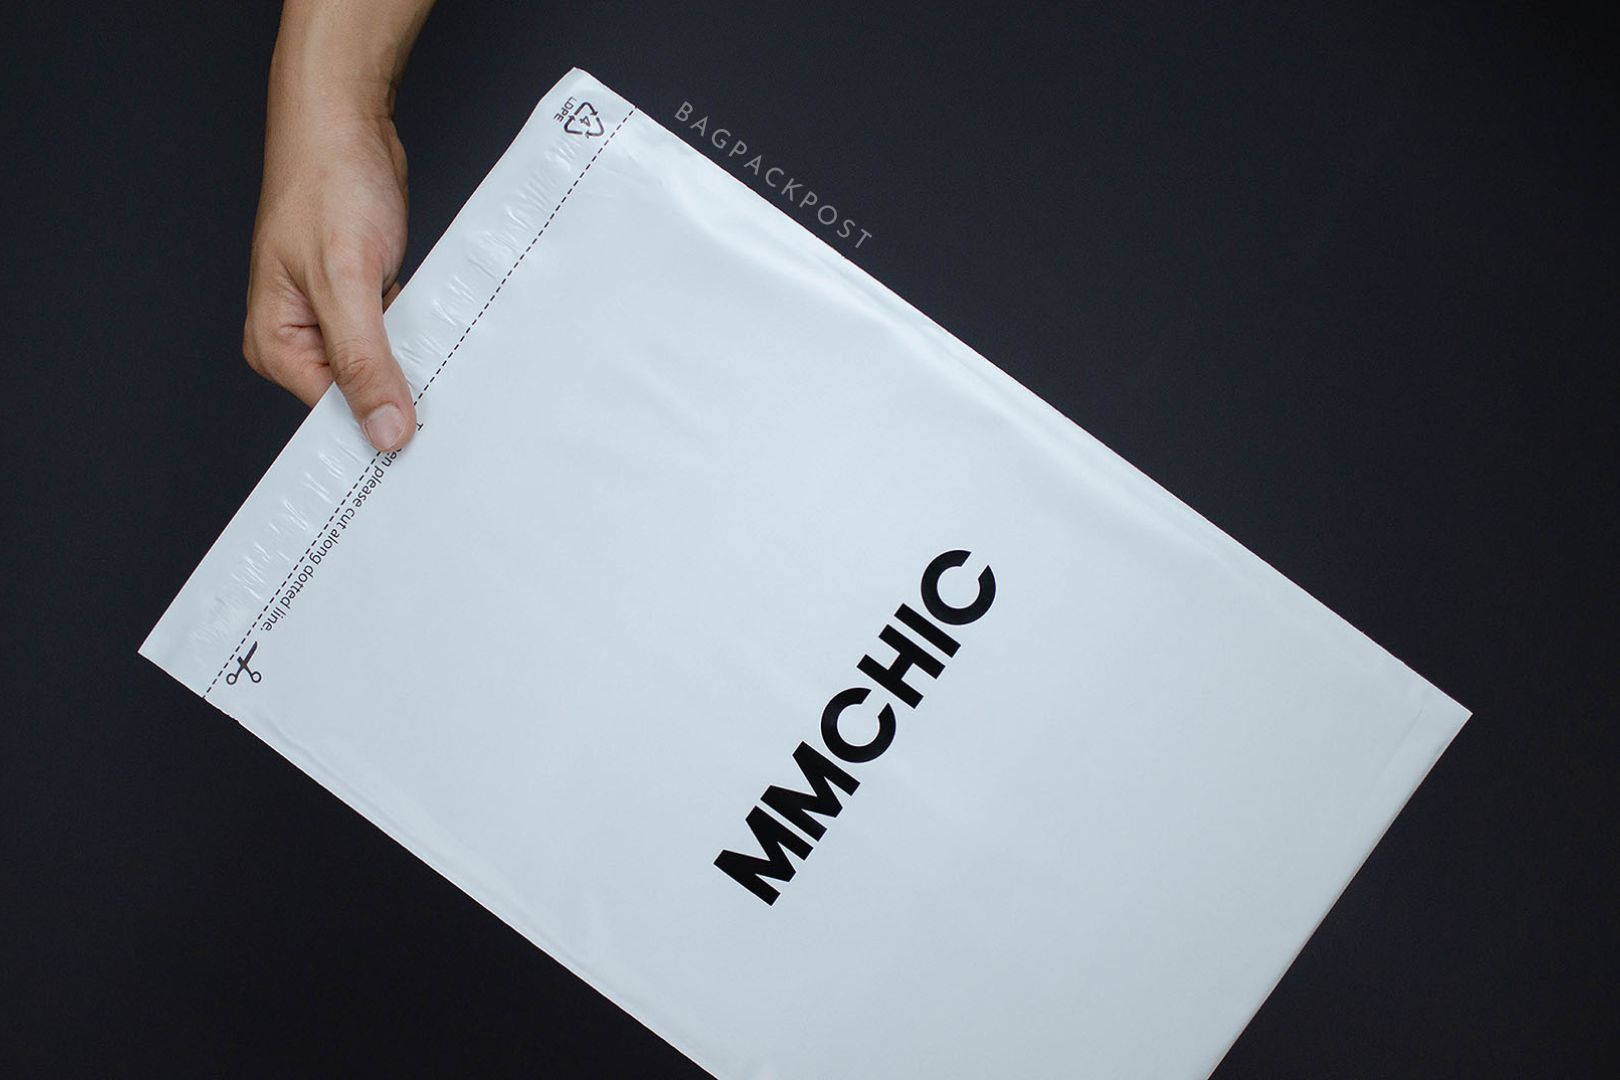 ผลิตถุงไปรษณีย์ ซองไปรษณีย์พิมพ์ลาย mmchic ซองไปรษณีย์สีขาว ถุงไปรษณีย์พิมพ์ลาย 1 BagPackPost